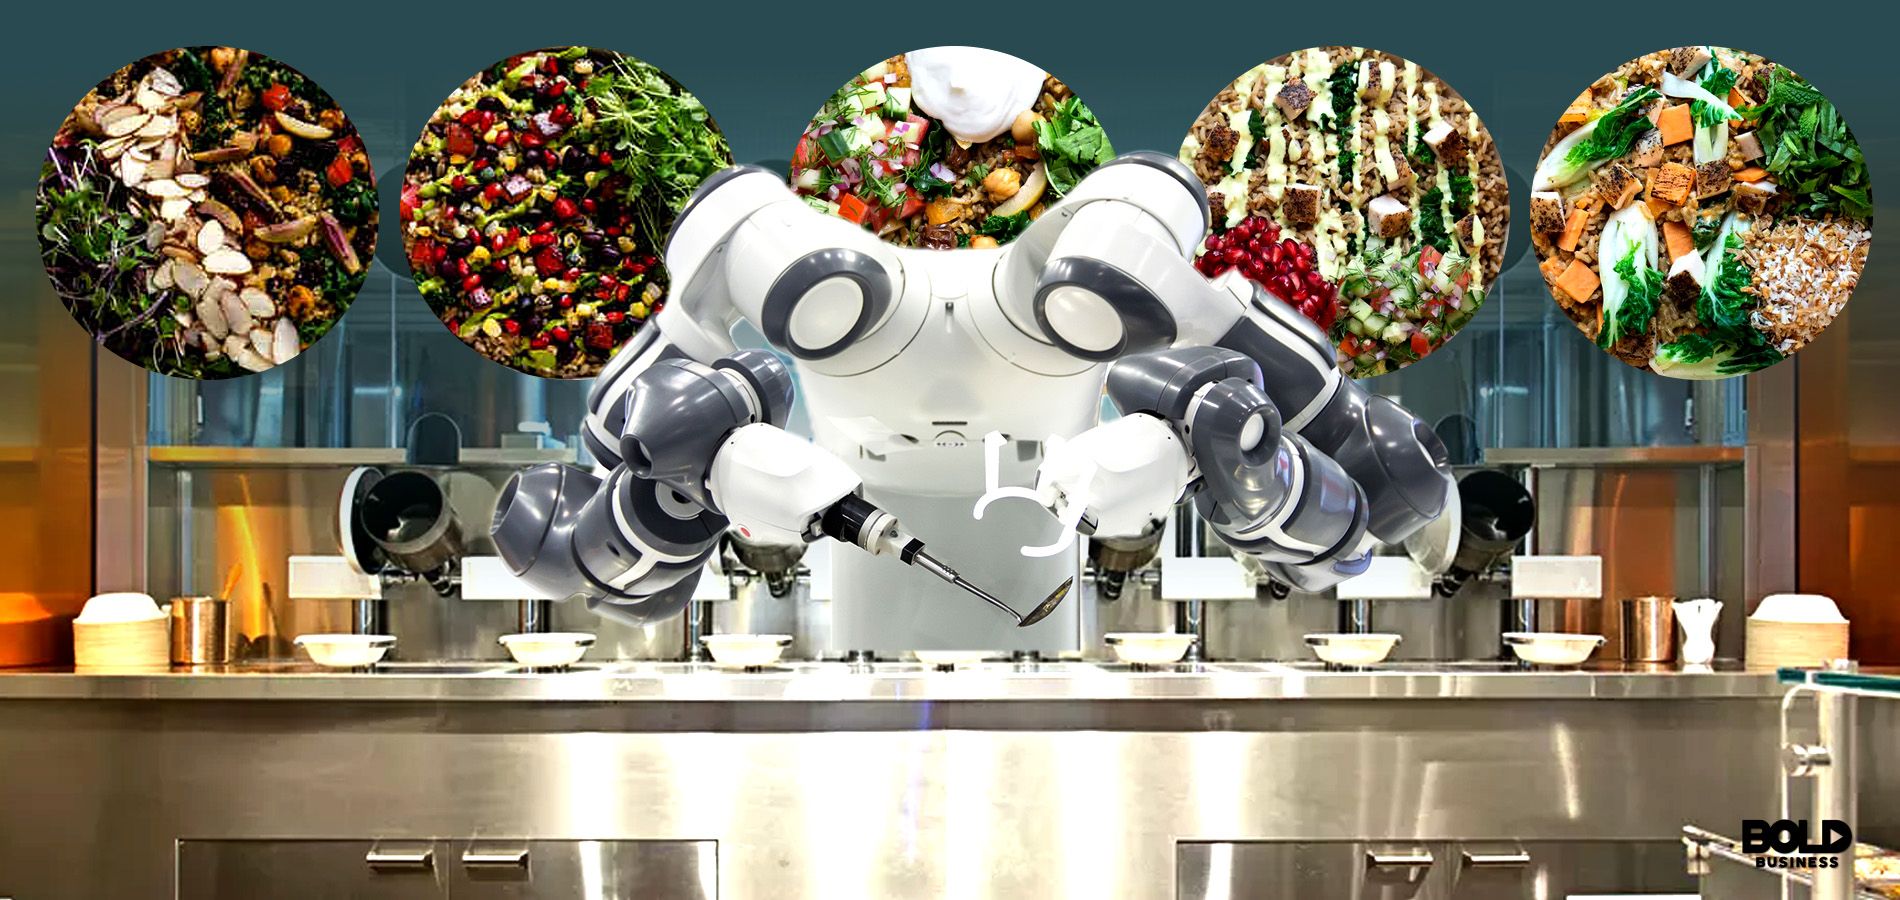 kitchen Spyce robot working